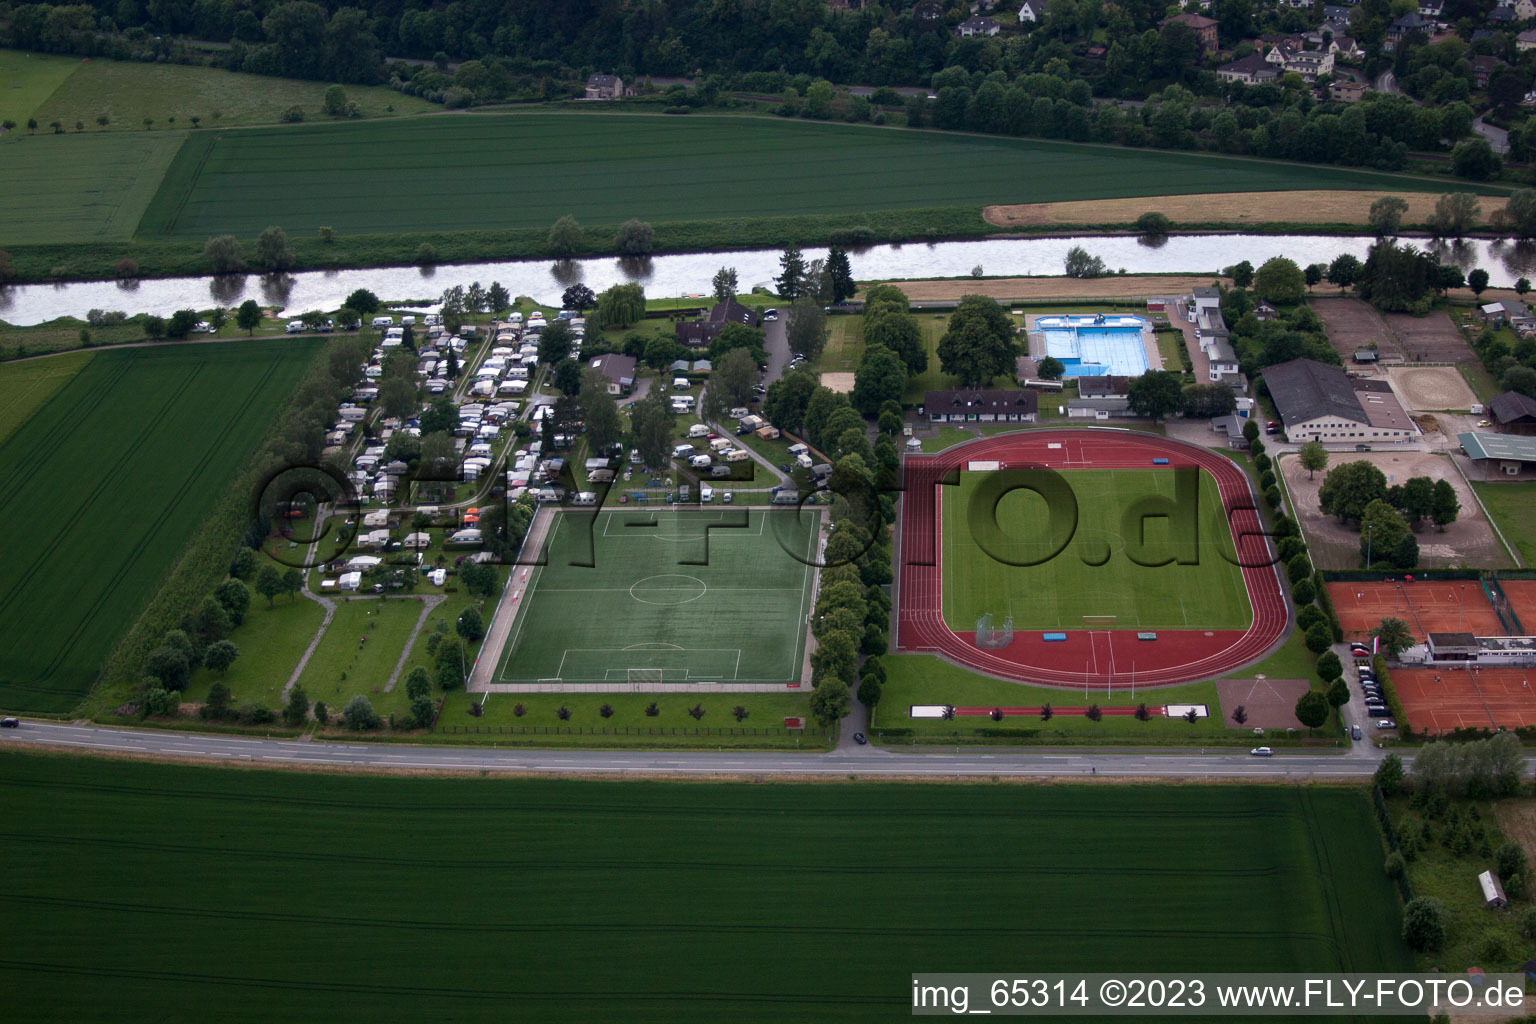 Höxter im Bundesland Nordrhein-Westfalen, Deutschland von der Drohne aus gesehen